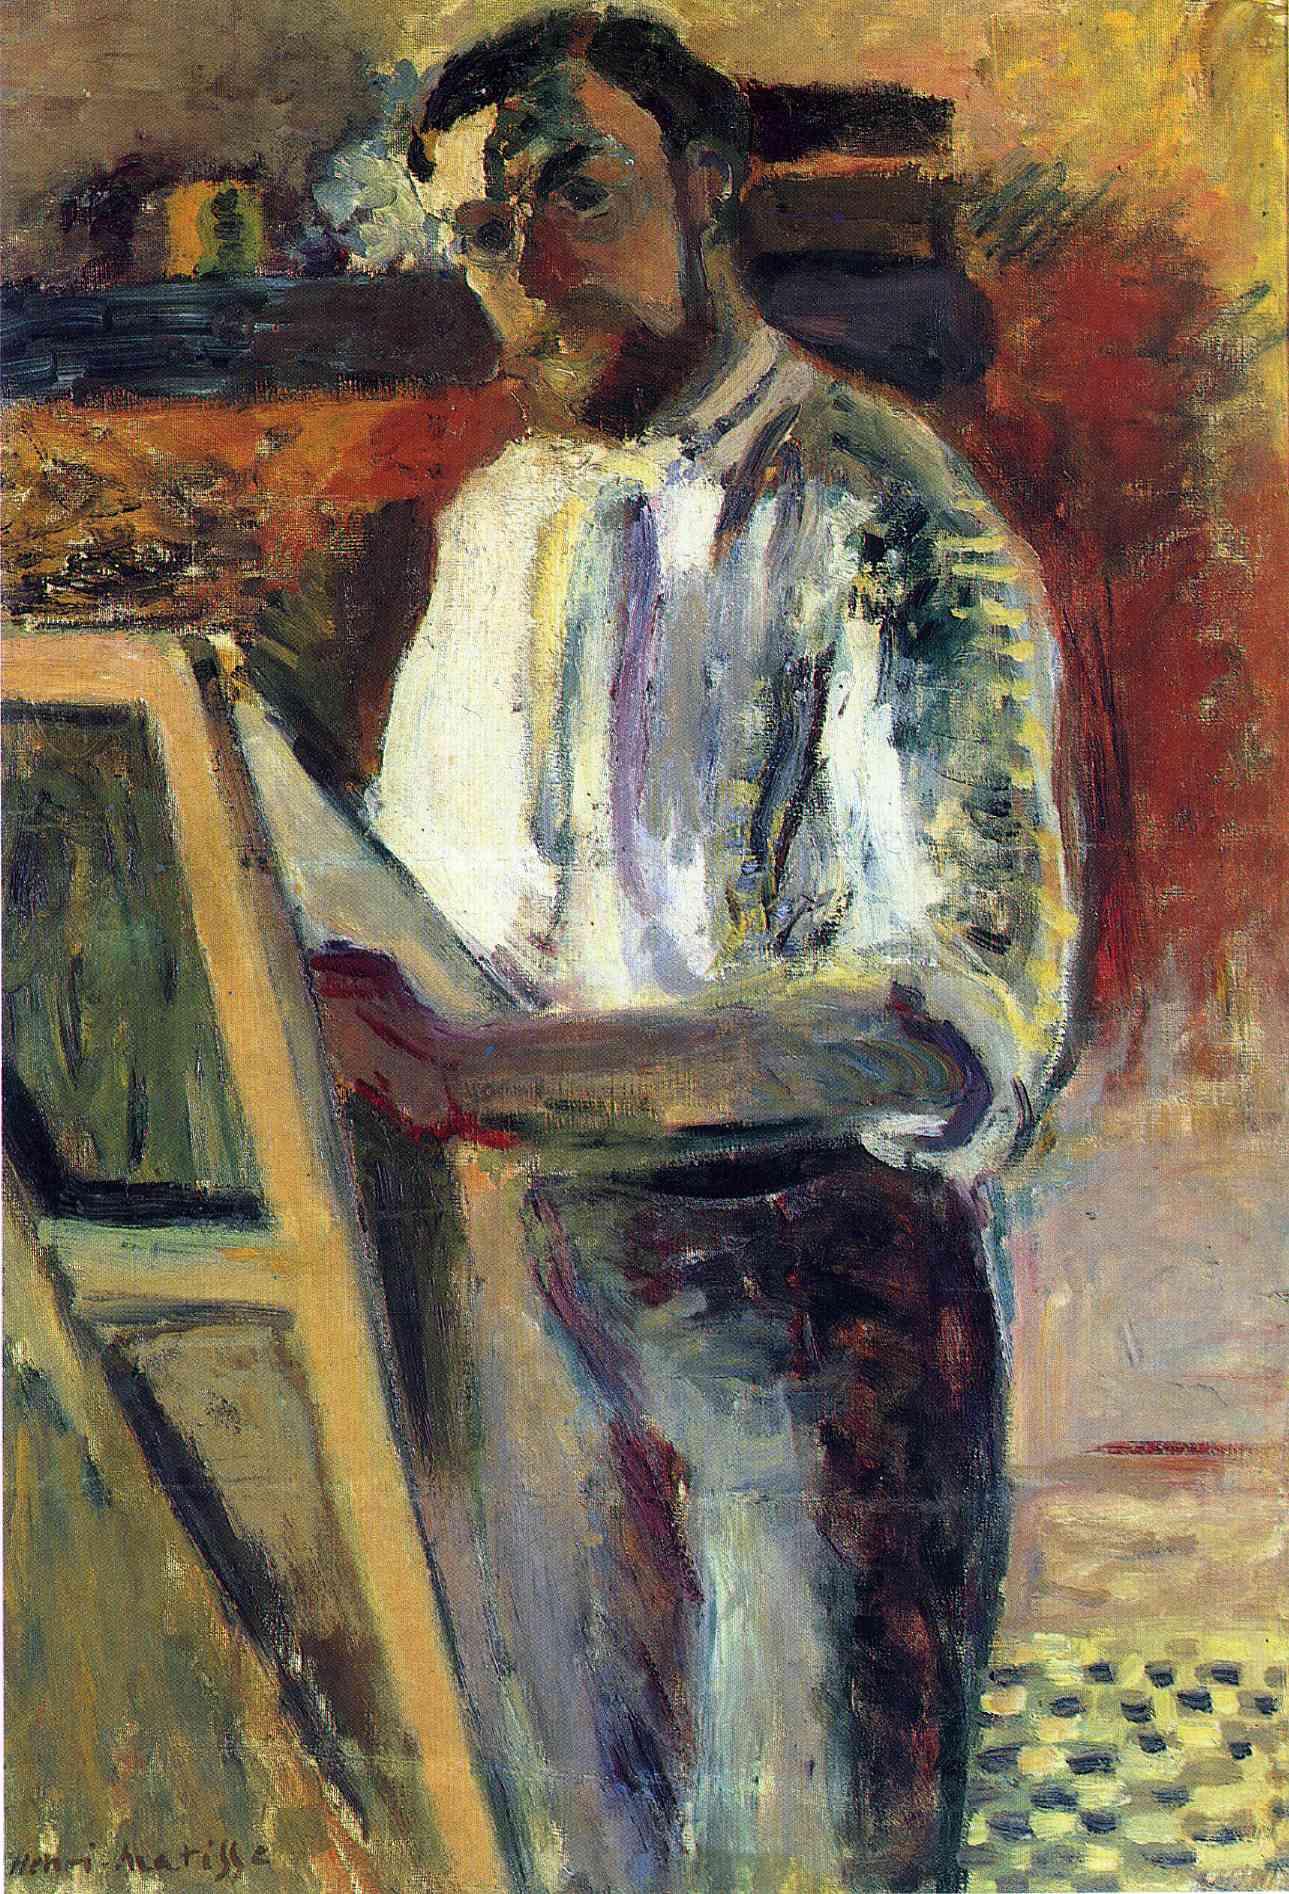 Self-Portrait in Shirtsleeves (1900).